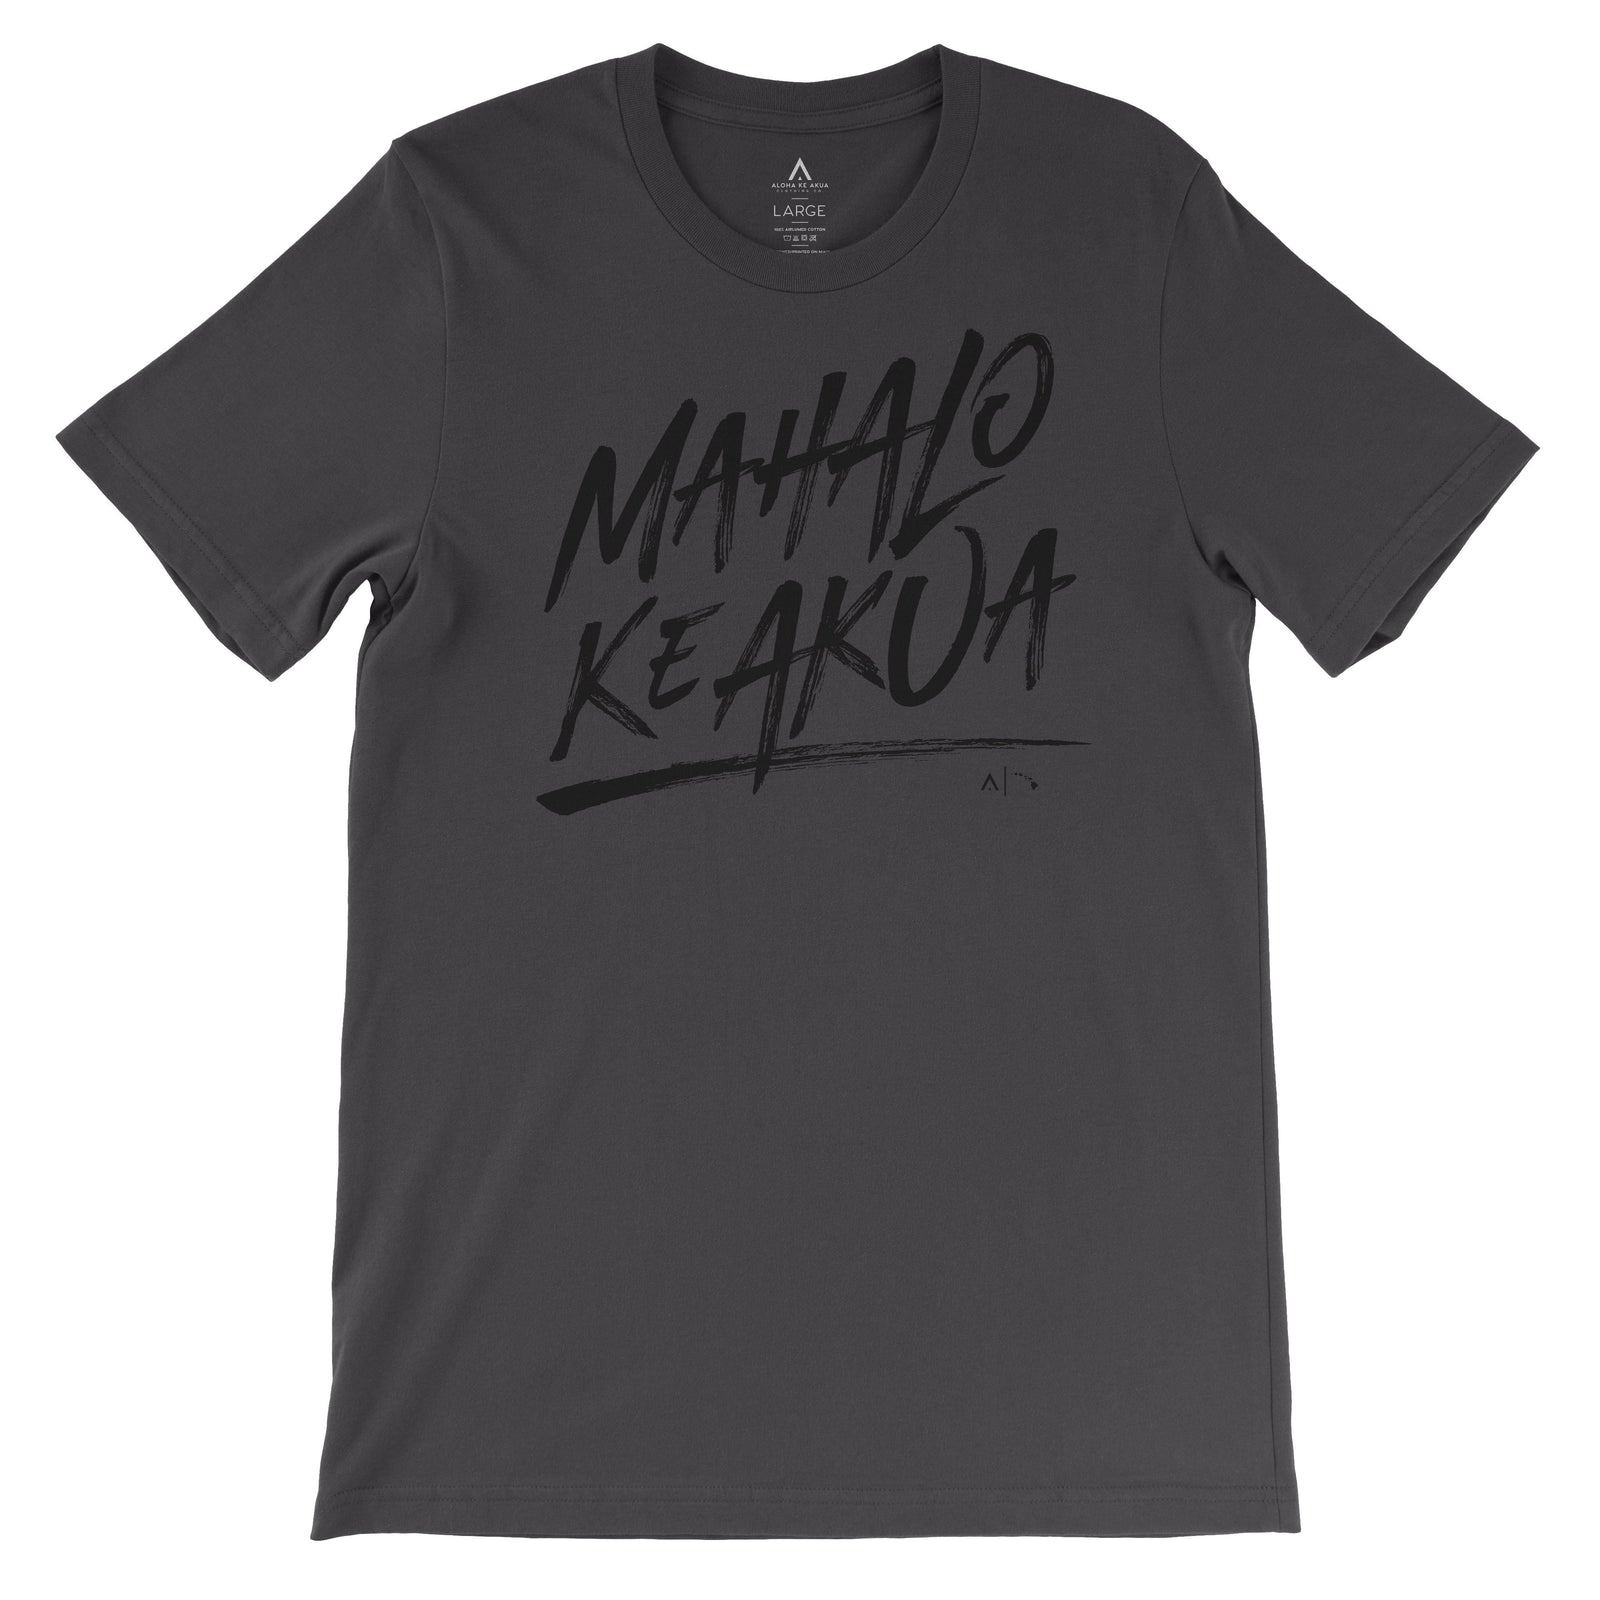 Pop-Up Mākeke - Aloha Ke Akua Clothing - Mahalo Ke Akua Men's Short Sleeve T-Shirt - Dark Gray - Front View